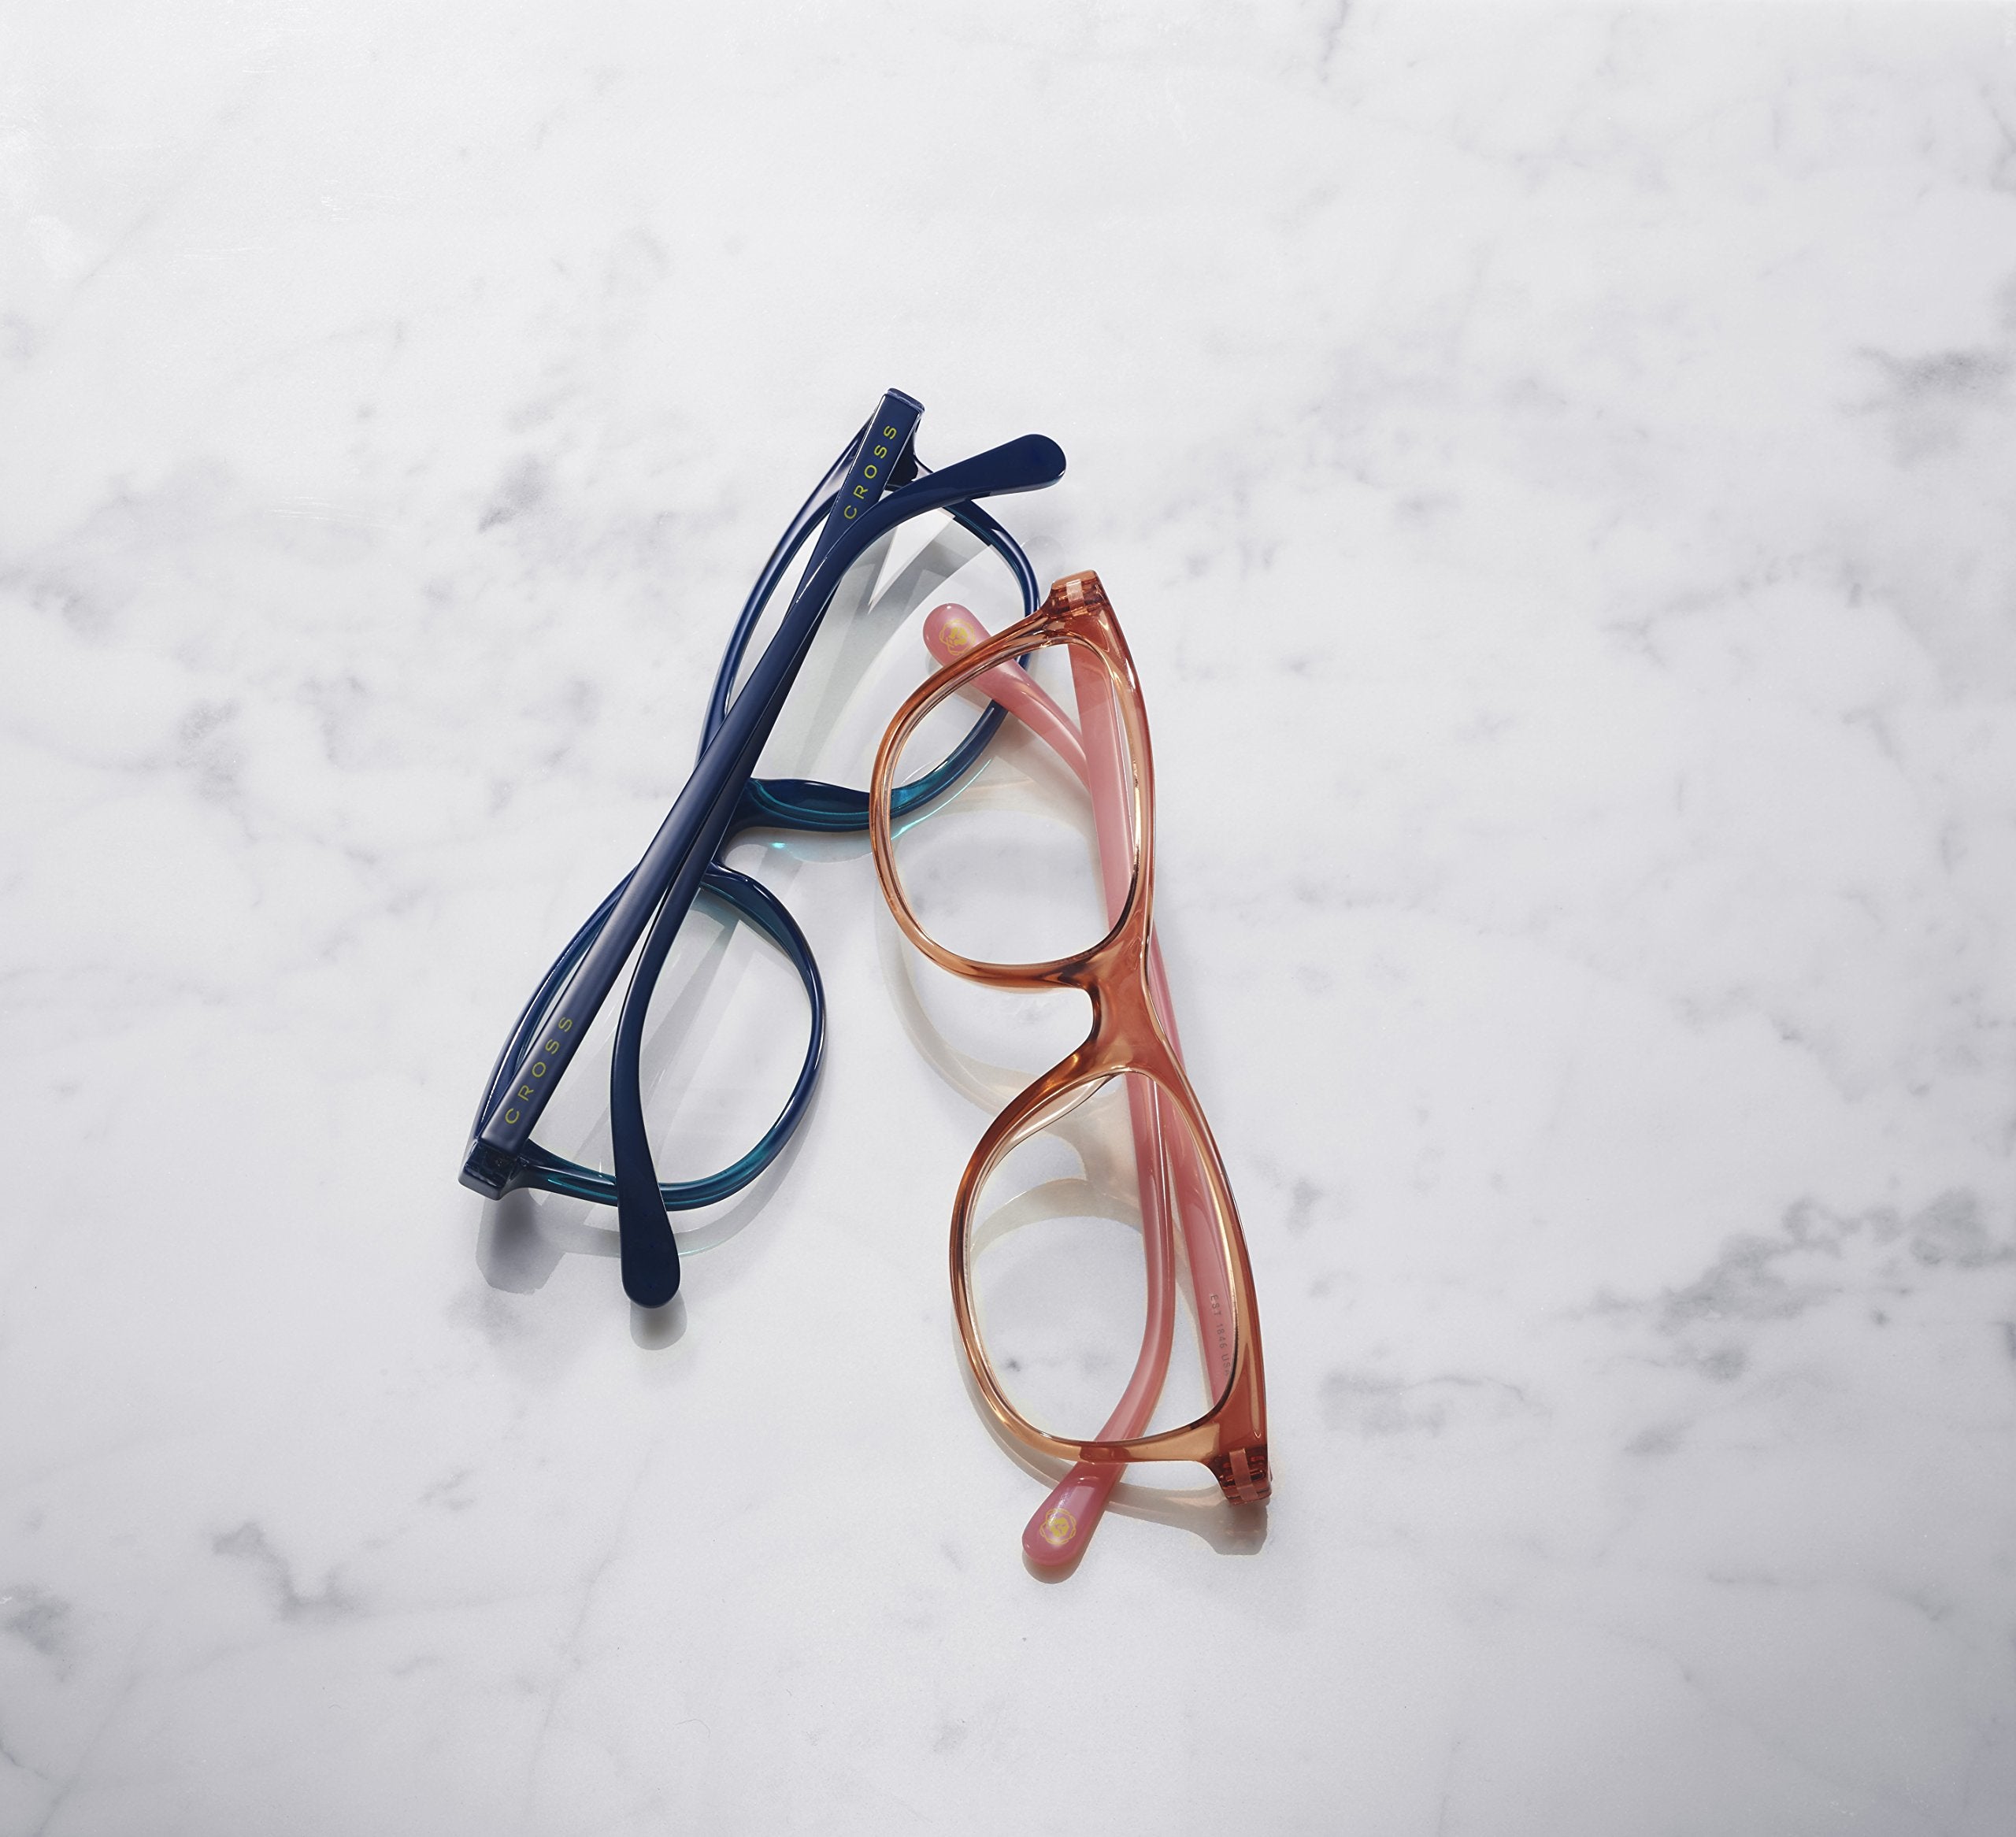 Cross Women's Reader Glasses  - Like New